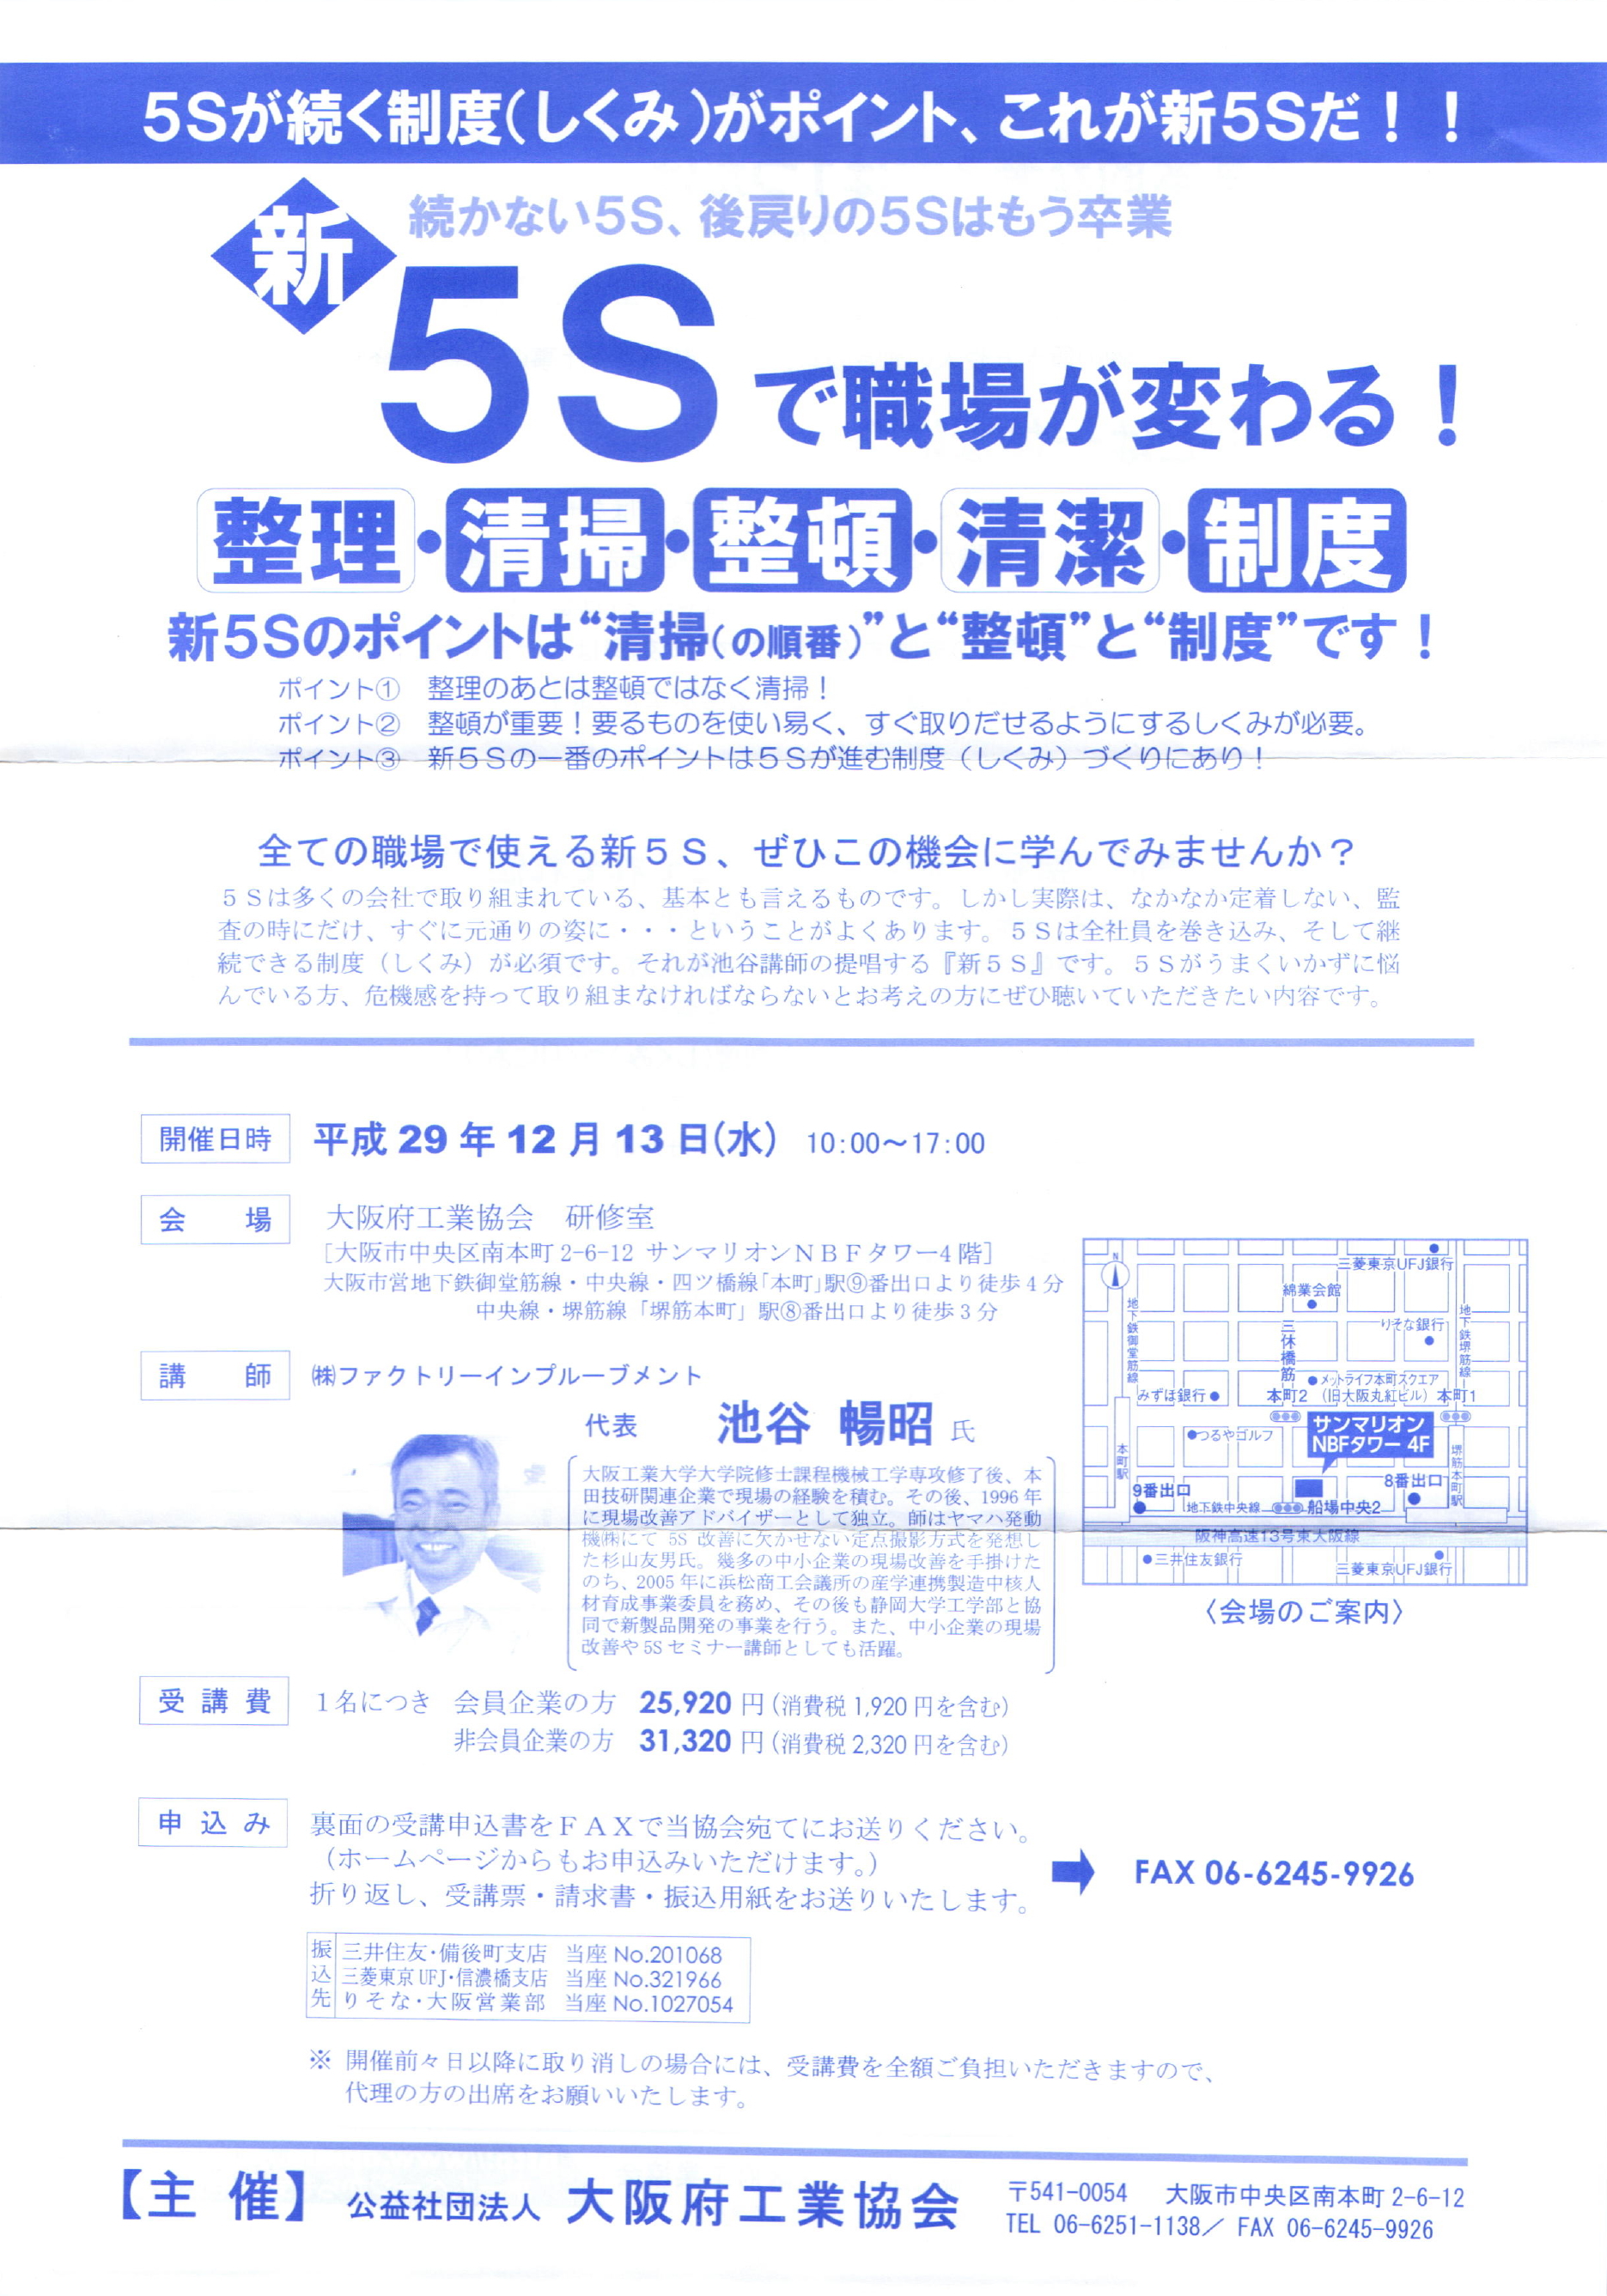 『新5Sで職場が変わる』～5Sが続く制度(しくみ)がポイント。これが新5Sだ～。主催：大阪府工業協会